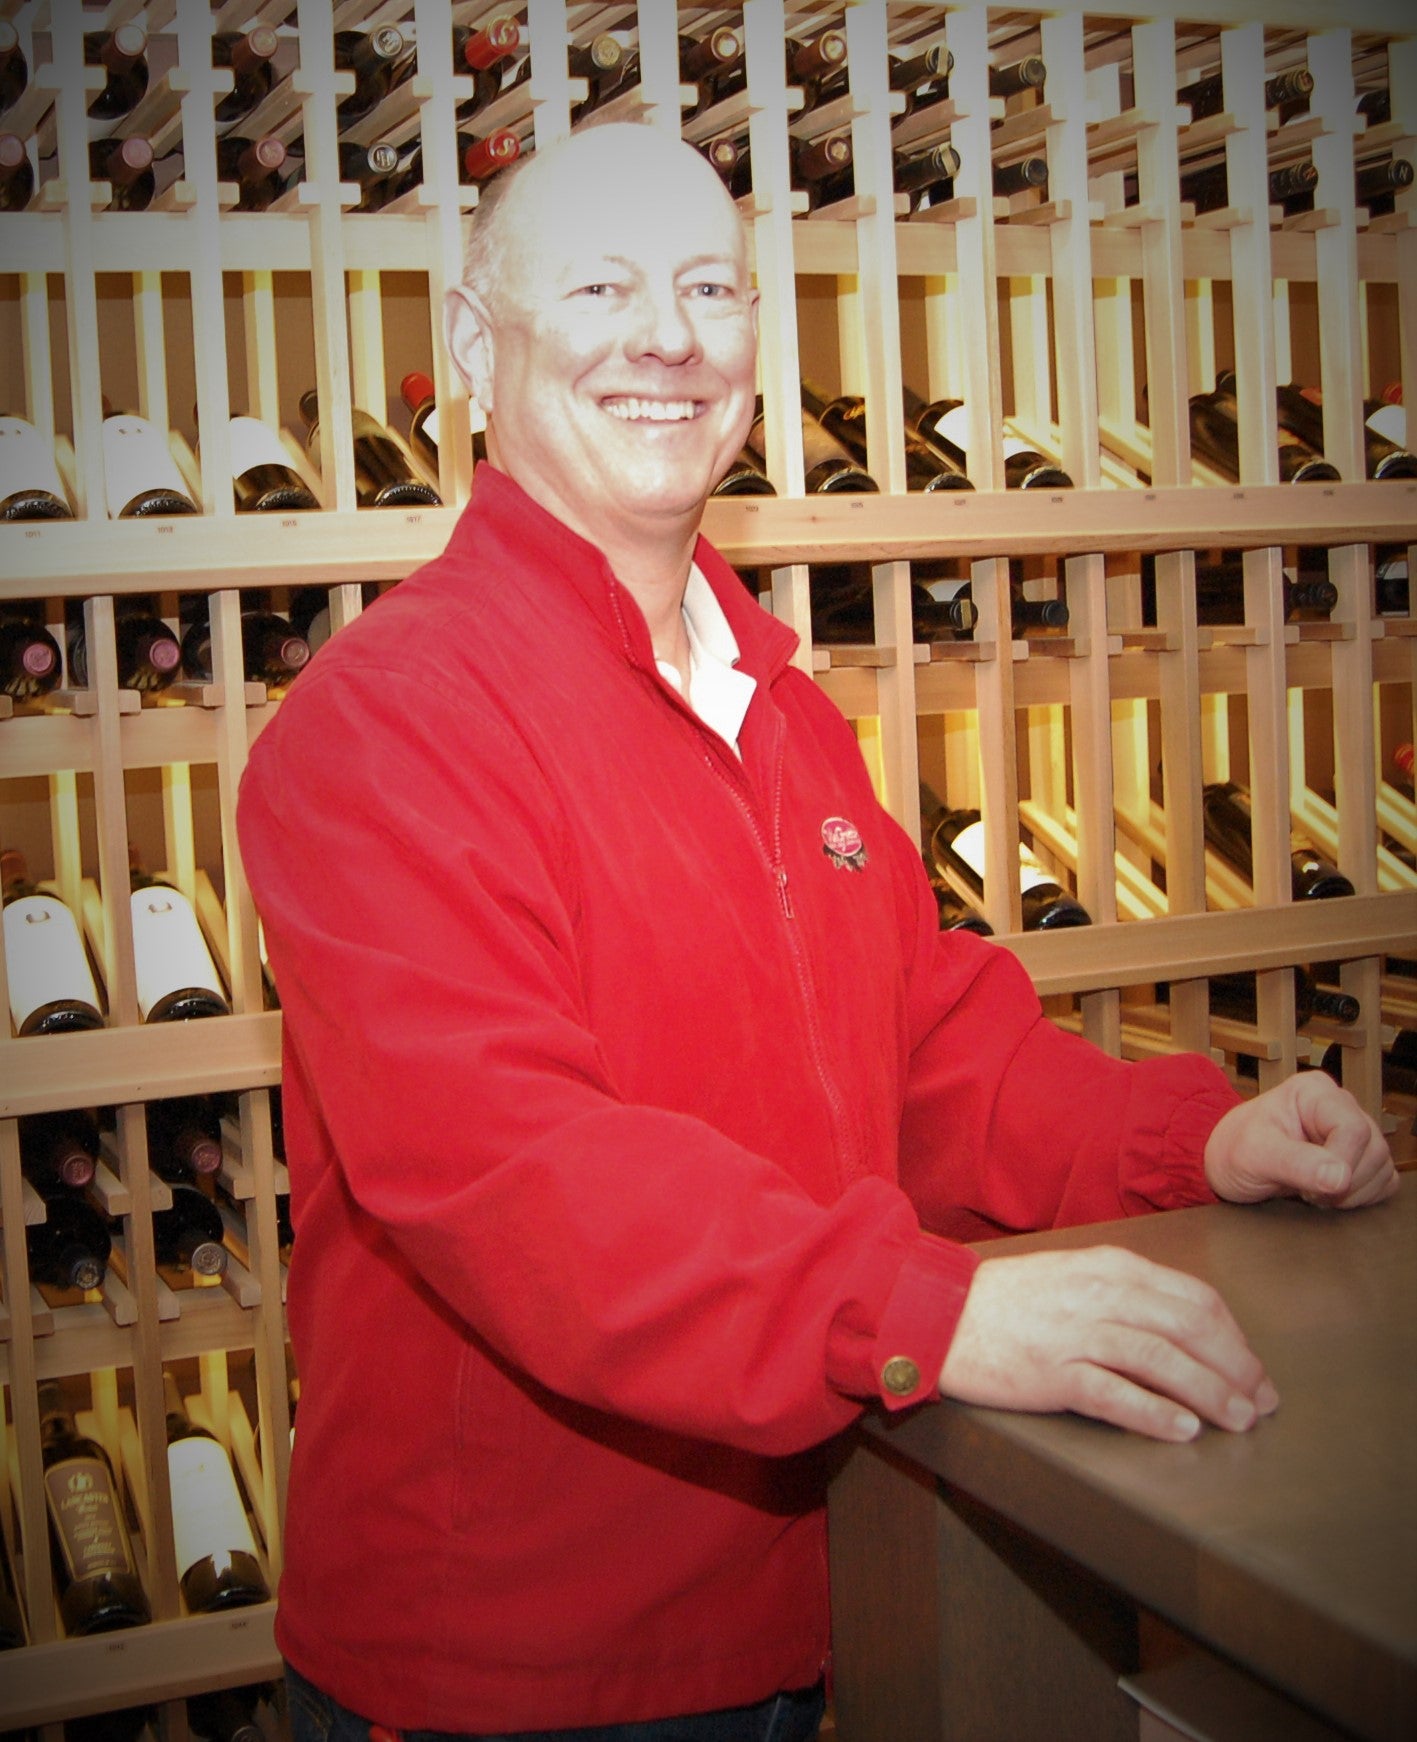 Jeff Hagen posing in a wine cellar